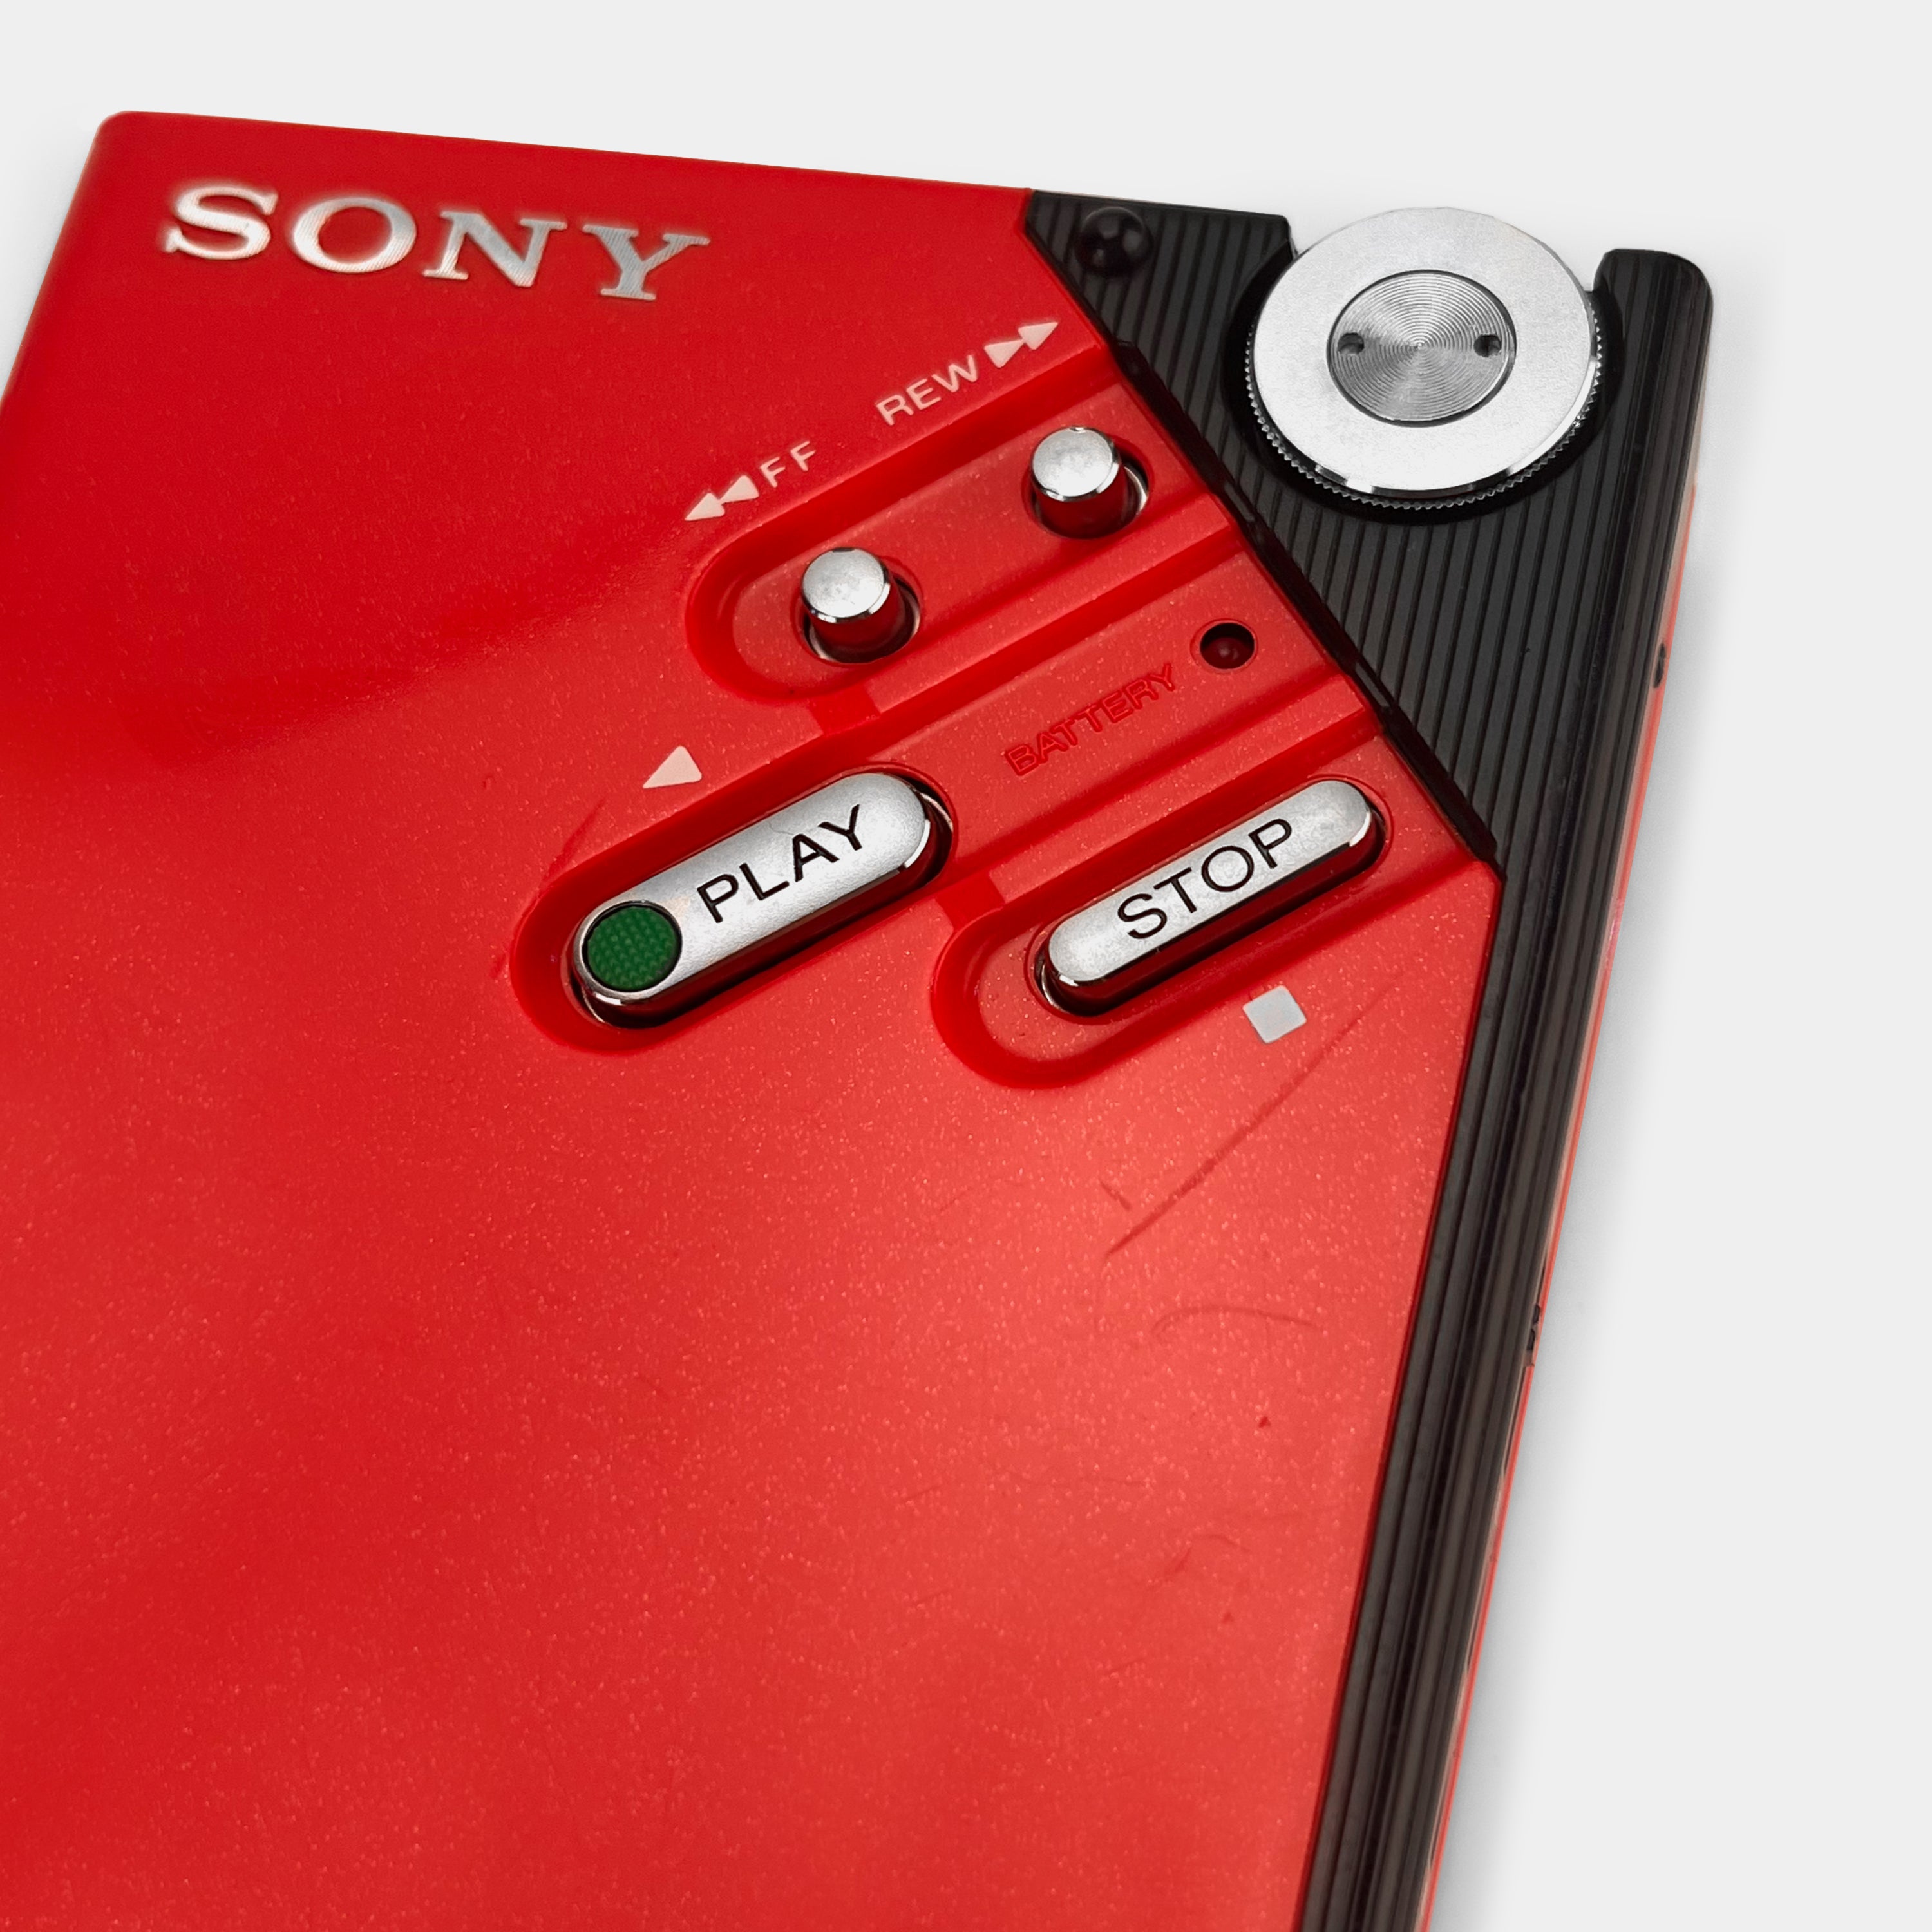 Sony Walkman II Red WM-2 Portable Cassette Player